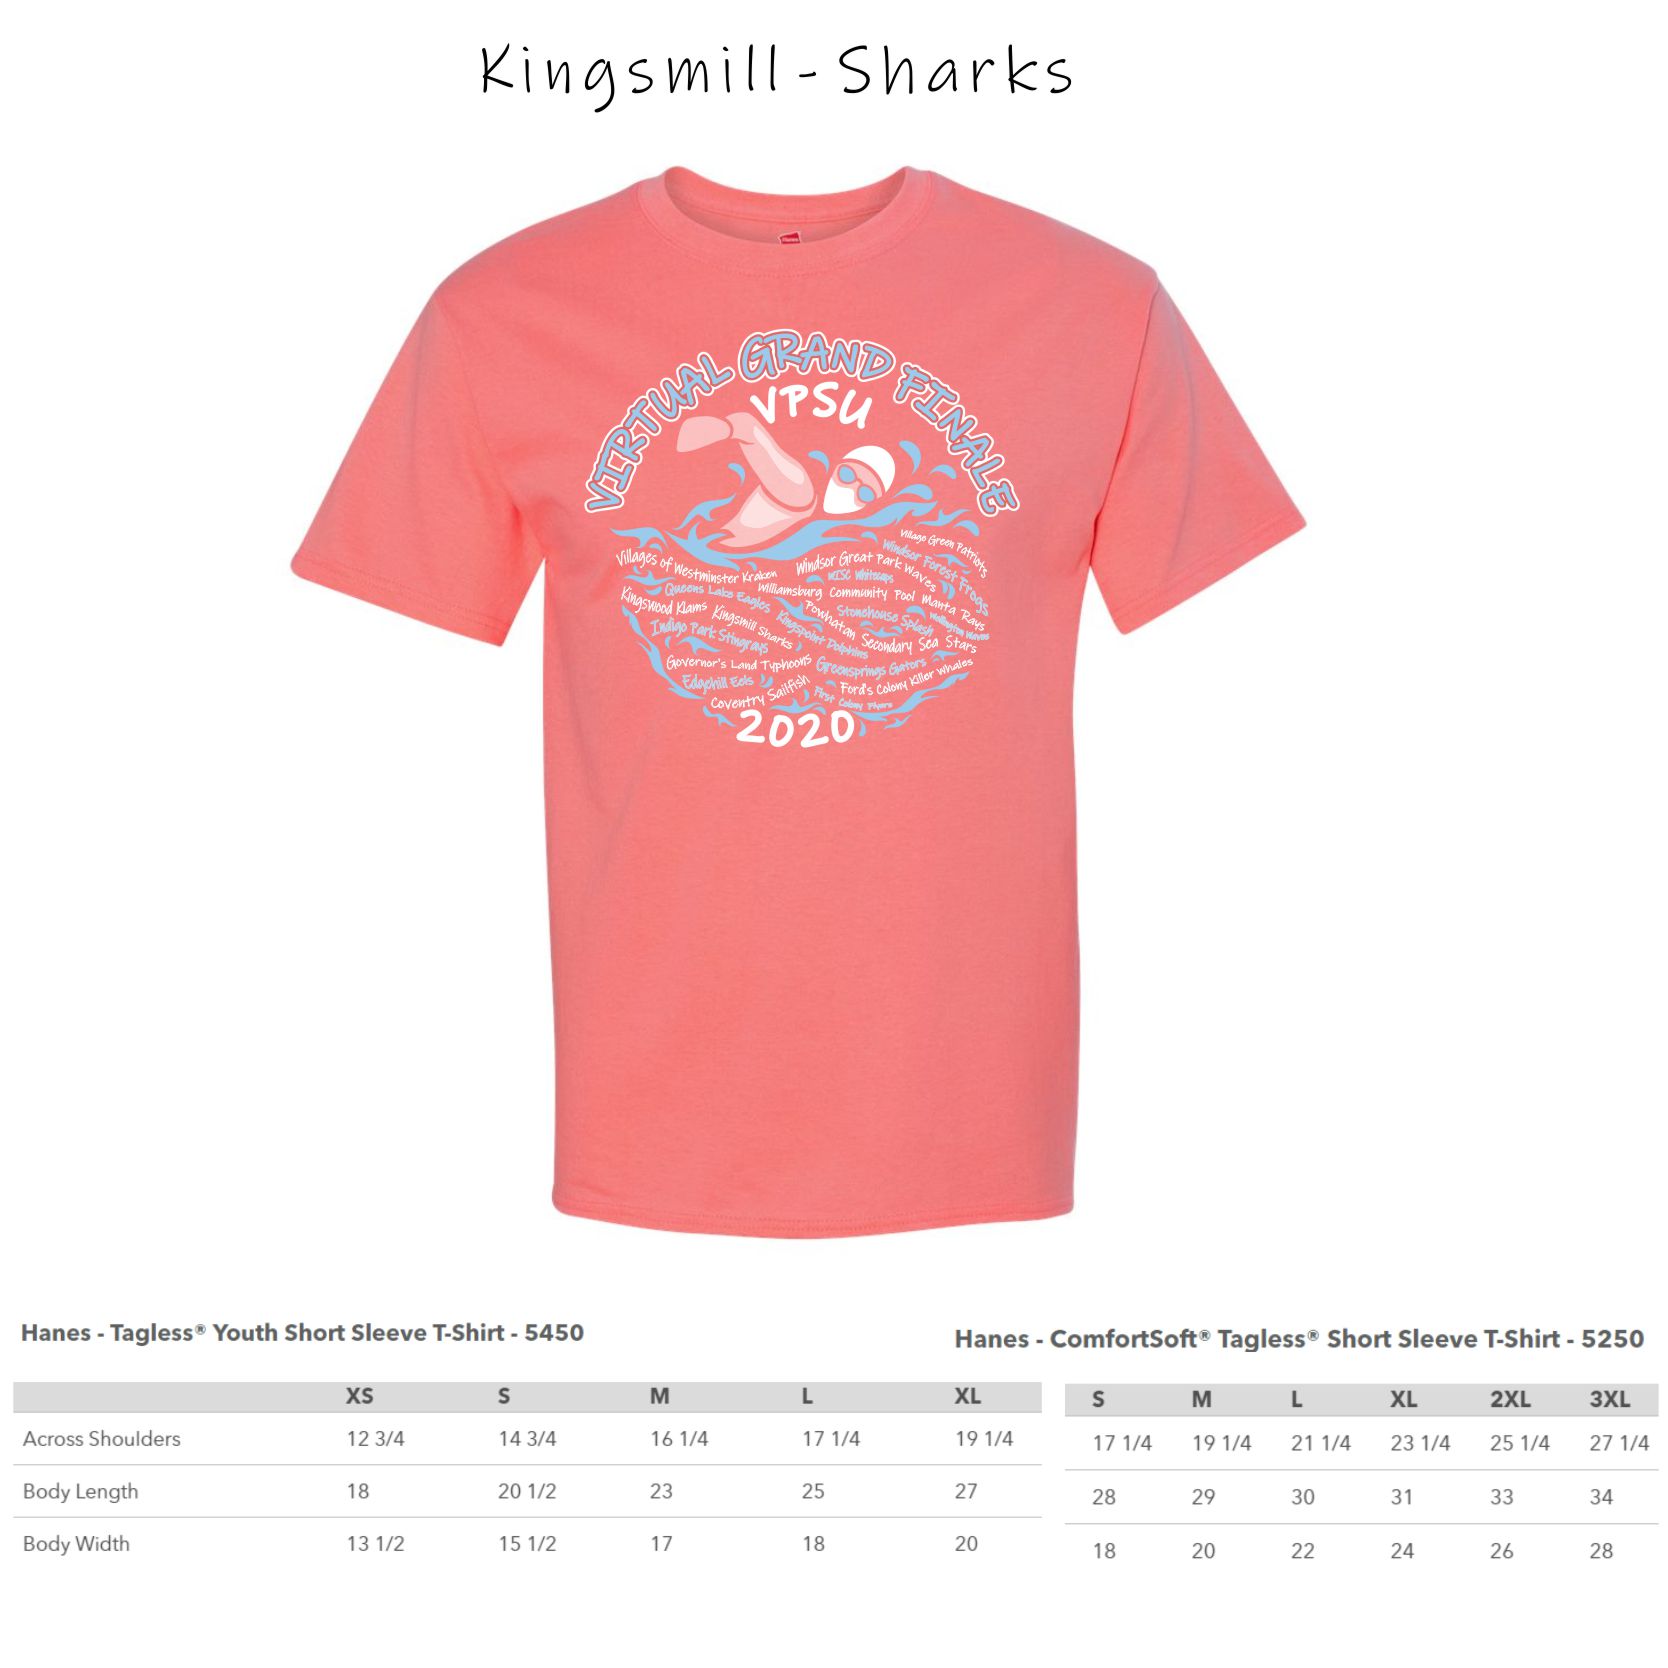 1 - Kingsmill Sharks